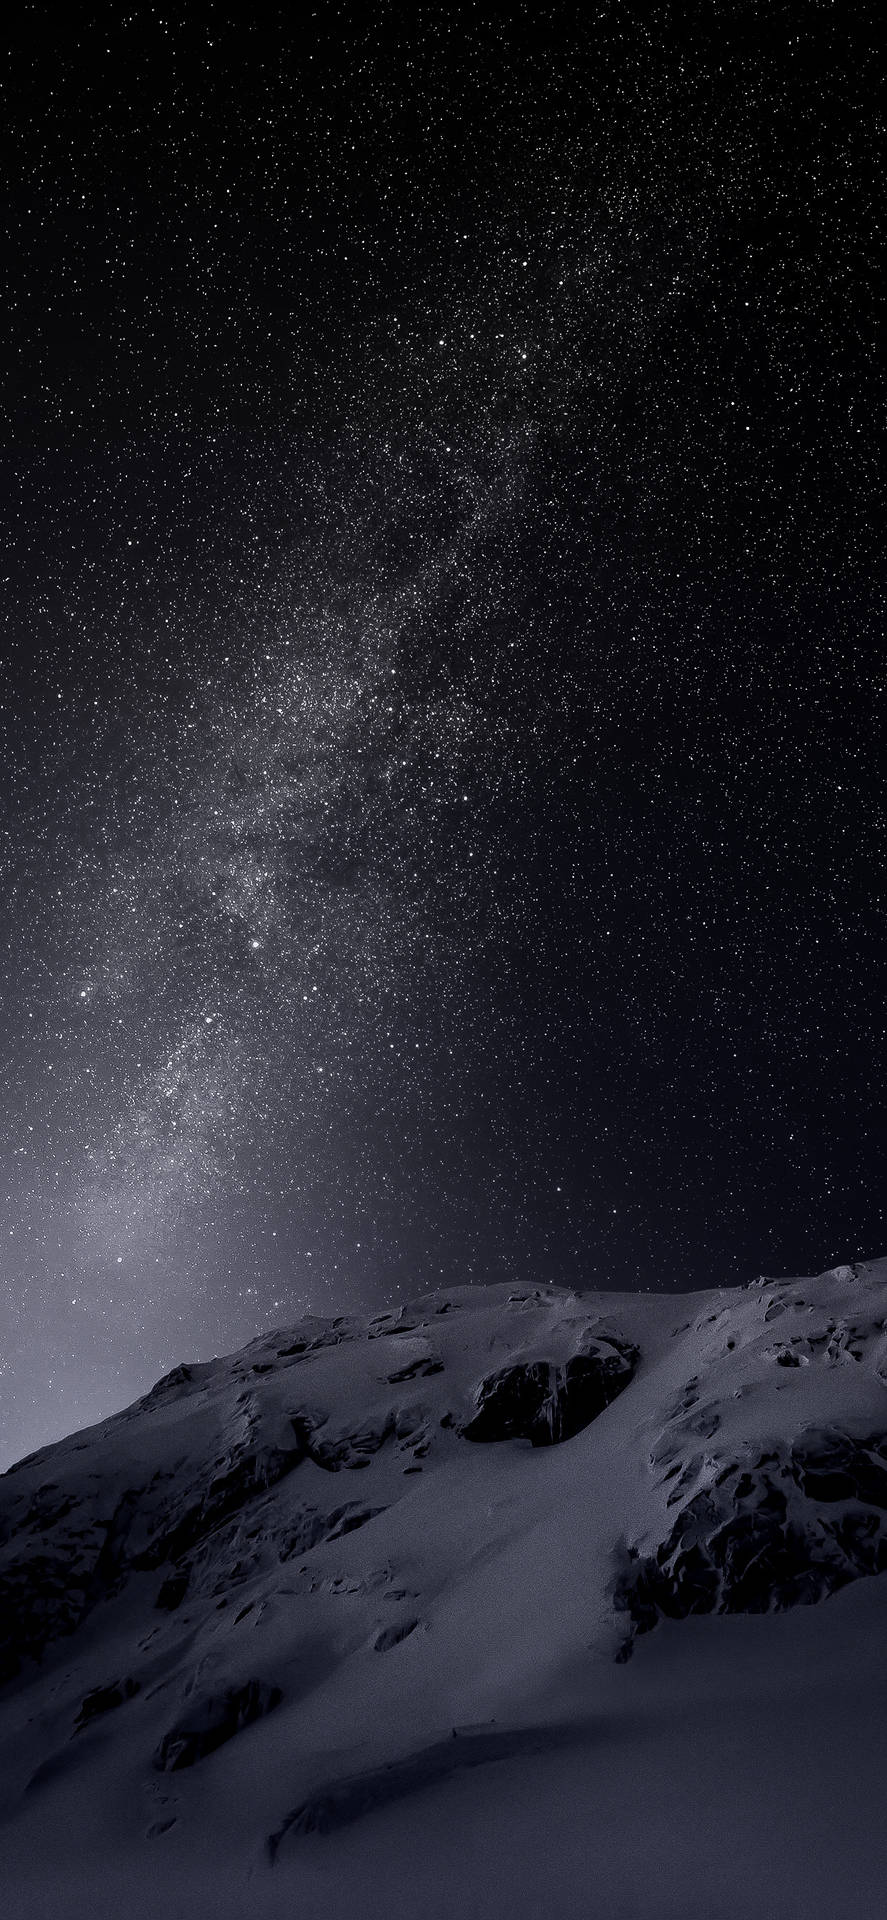 Dark Mode Snowy Mountain Under Countless Stars